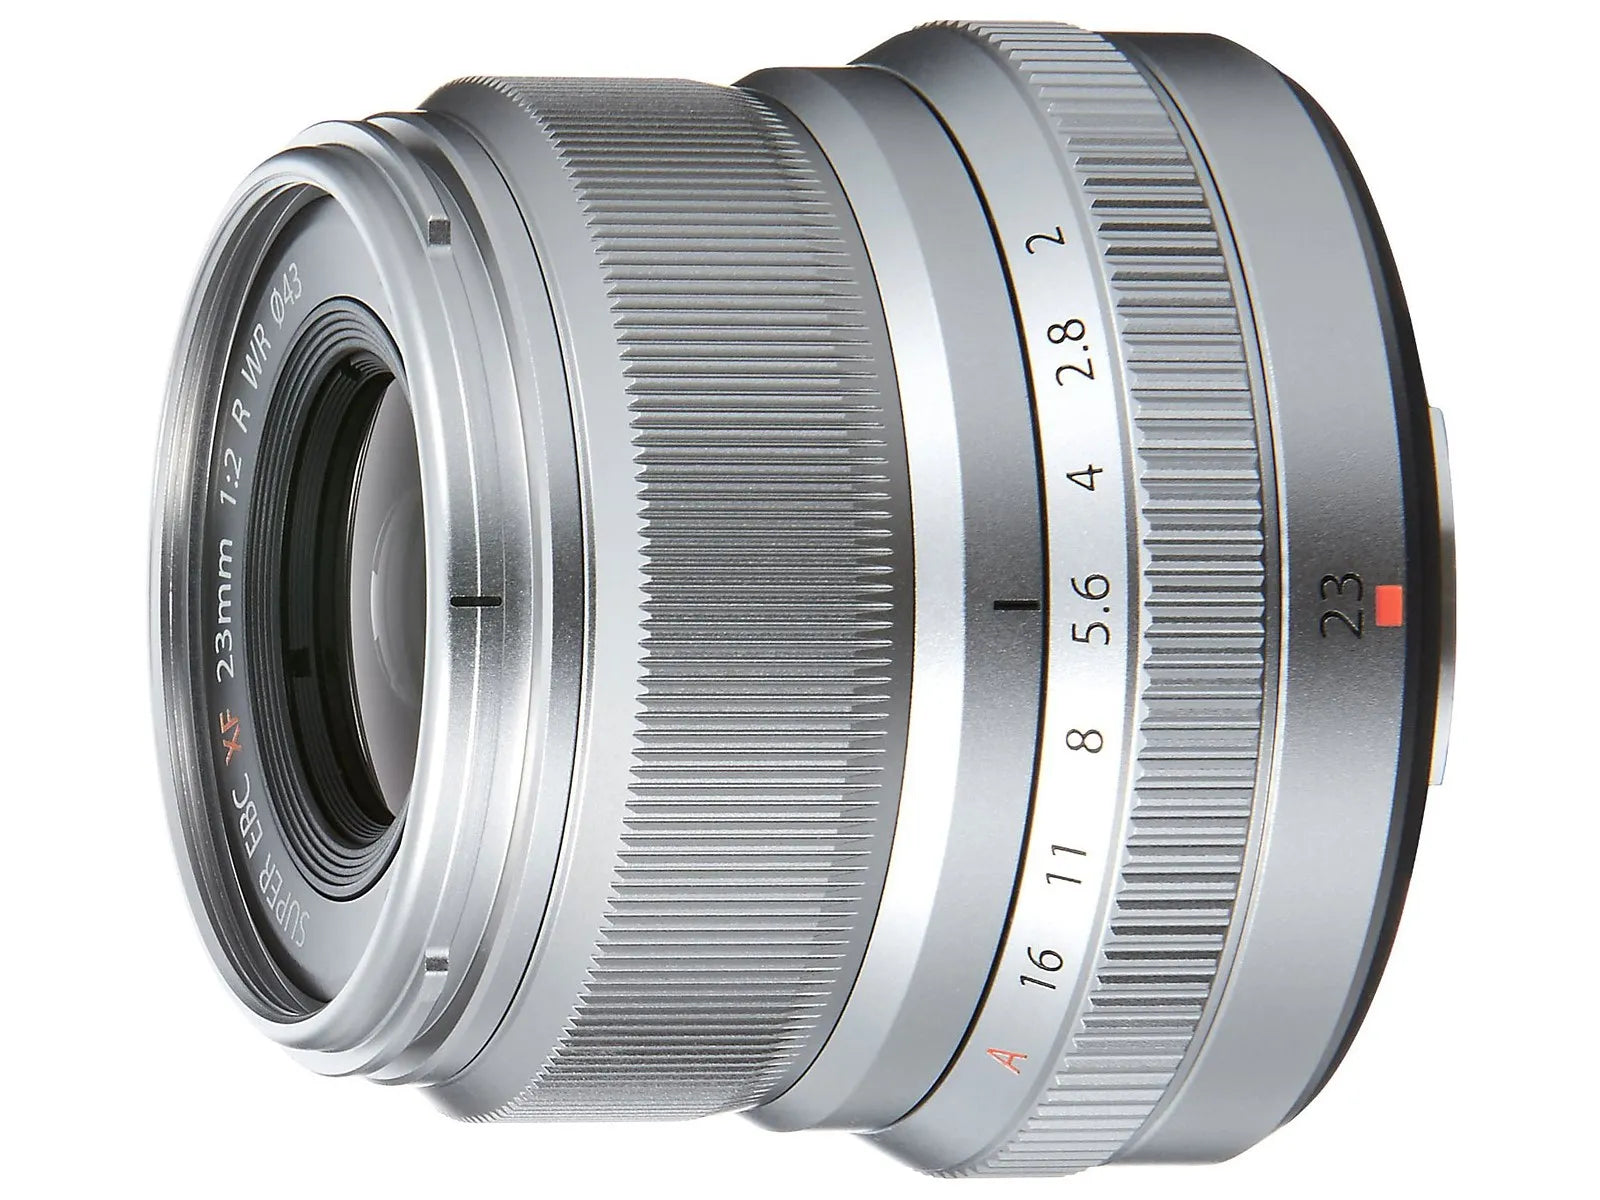 FujiFilm 23mm f2 R WR XF Lens - Silver